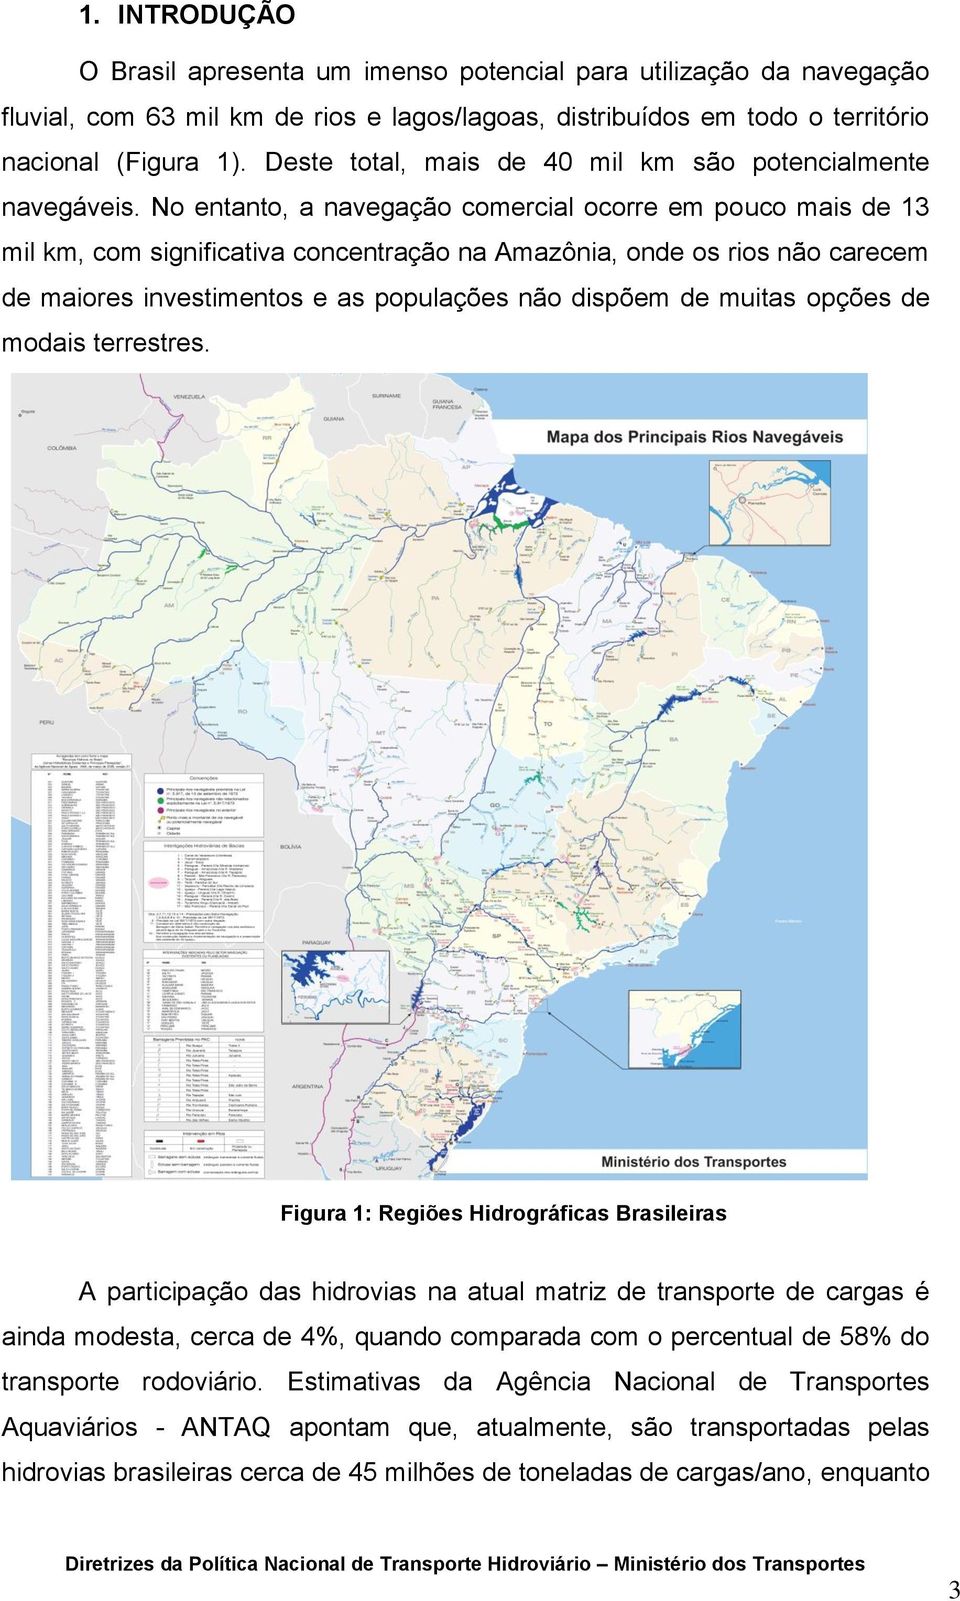 No entanto, a navegação comercial ocorre em pouco mais de 13 mil km, com significativa concentração na Amazônia, onde os rios não carecem de maiores investimentos e as populações não dispõem de